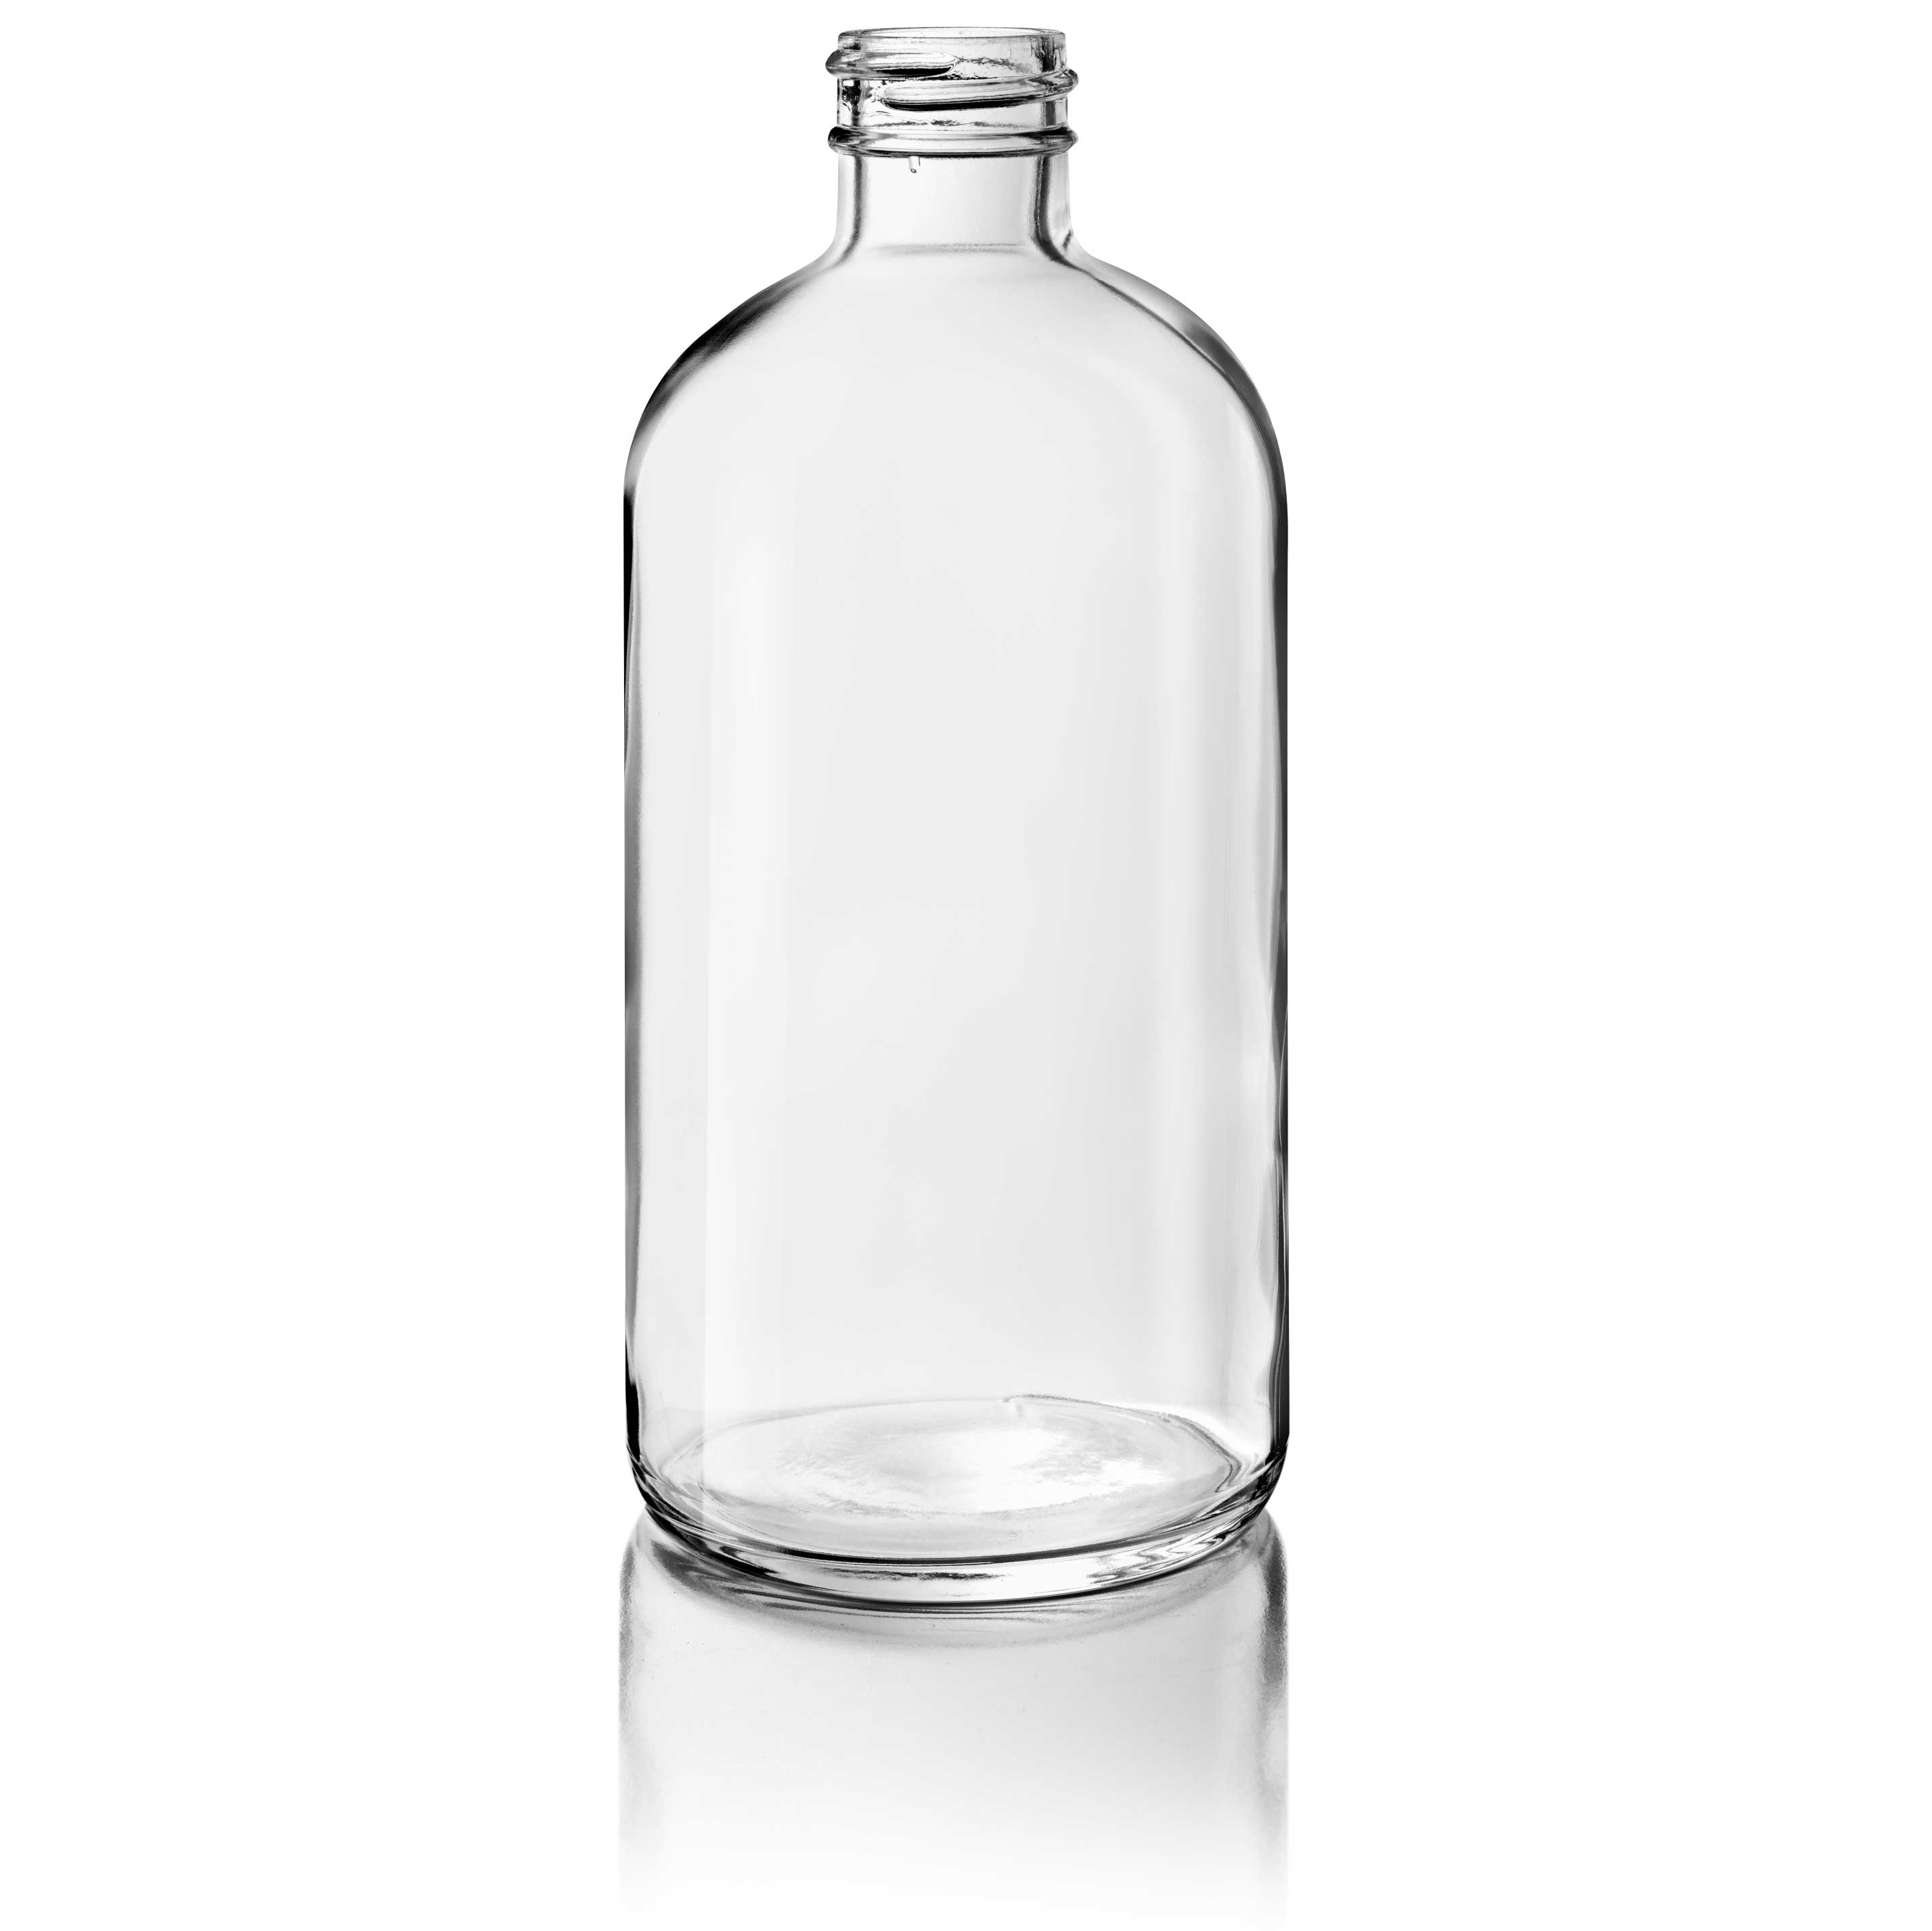 Cosmetic bottle Linden Light Weight 250ml, 24/410, Flint